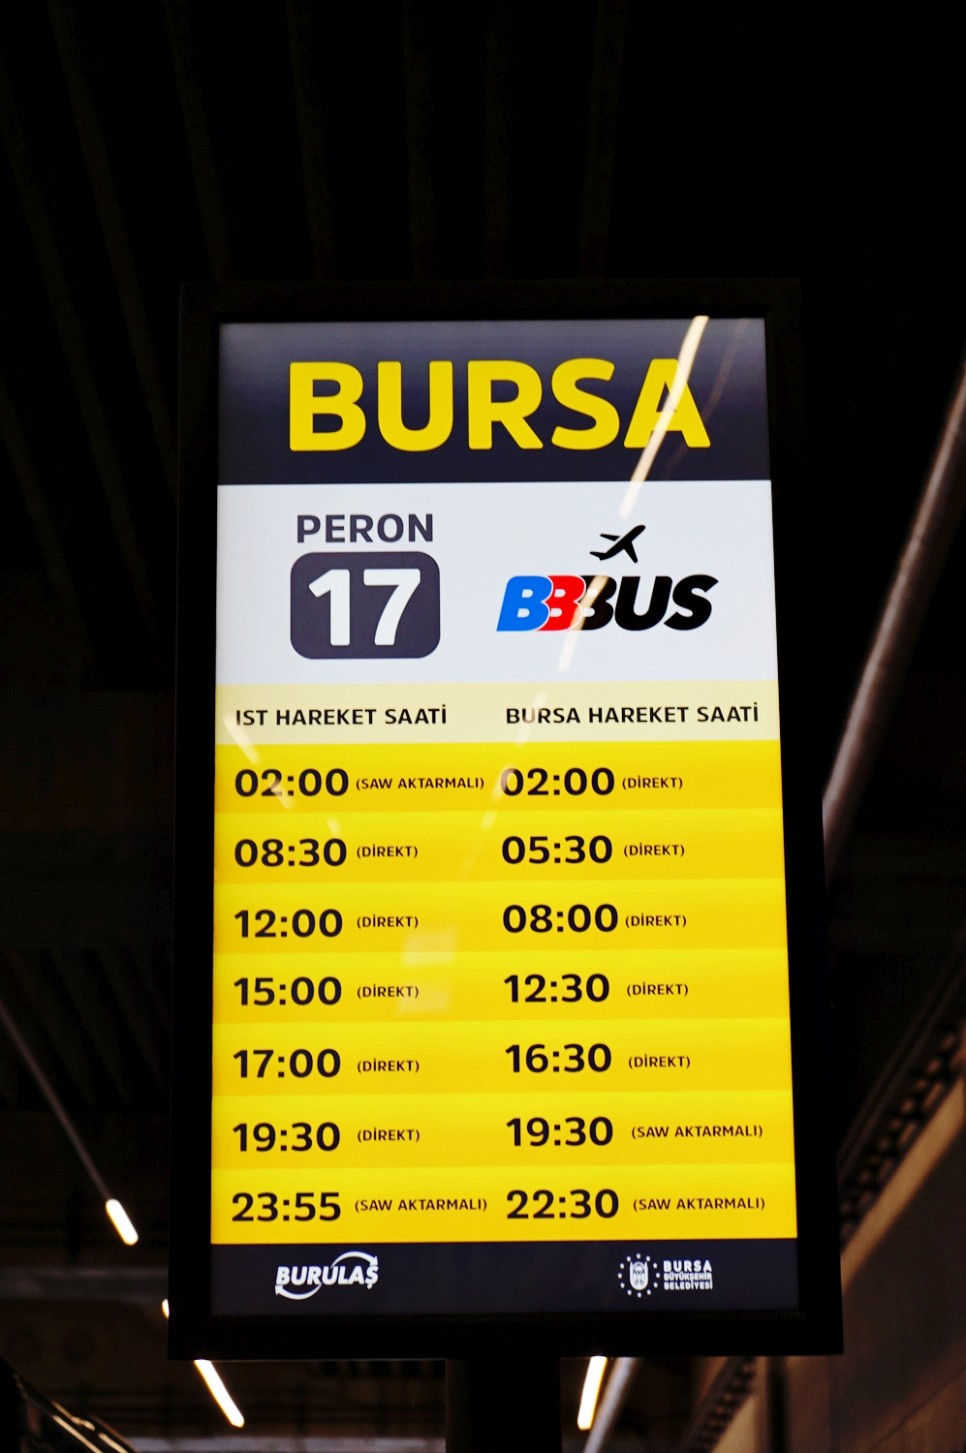 유럽 터키 여행 부르사 가는법 렌트카, 버스, 페리 총정리